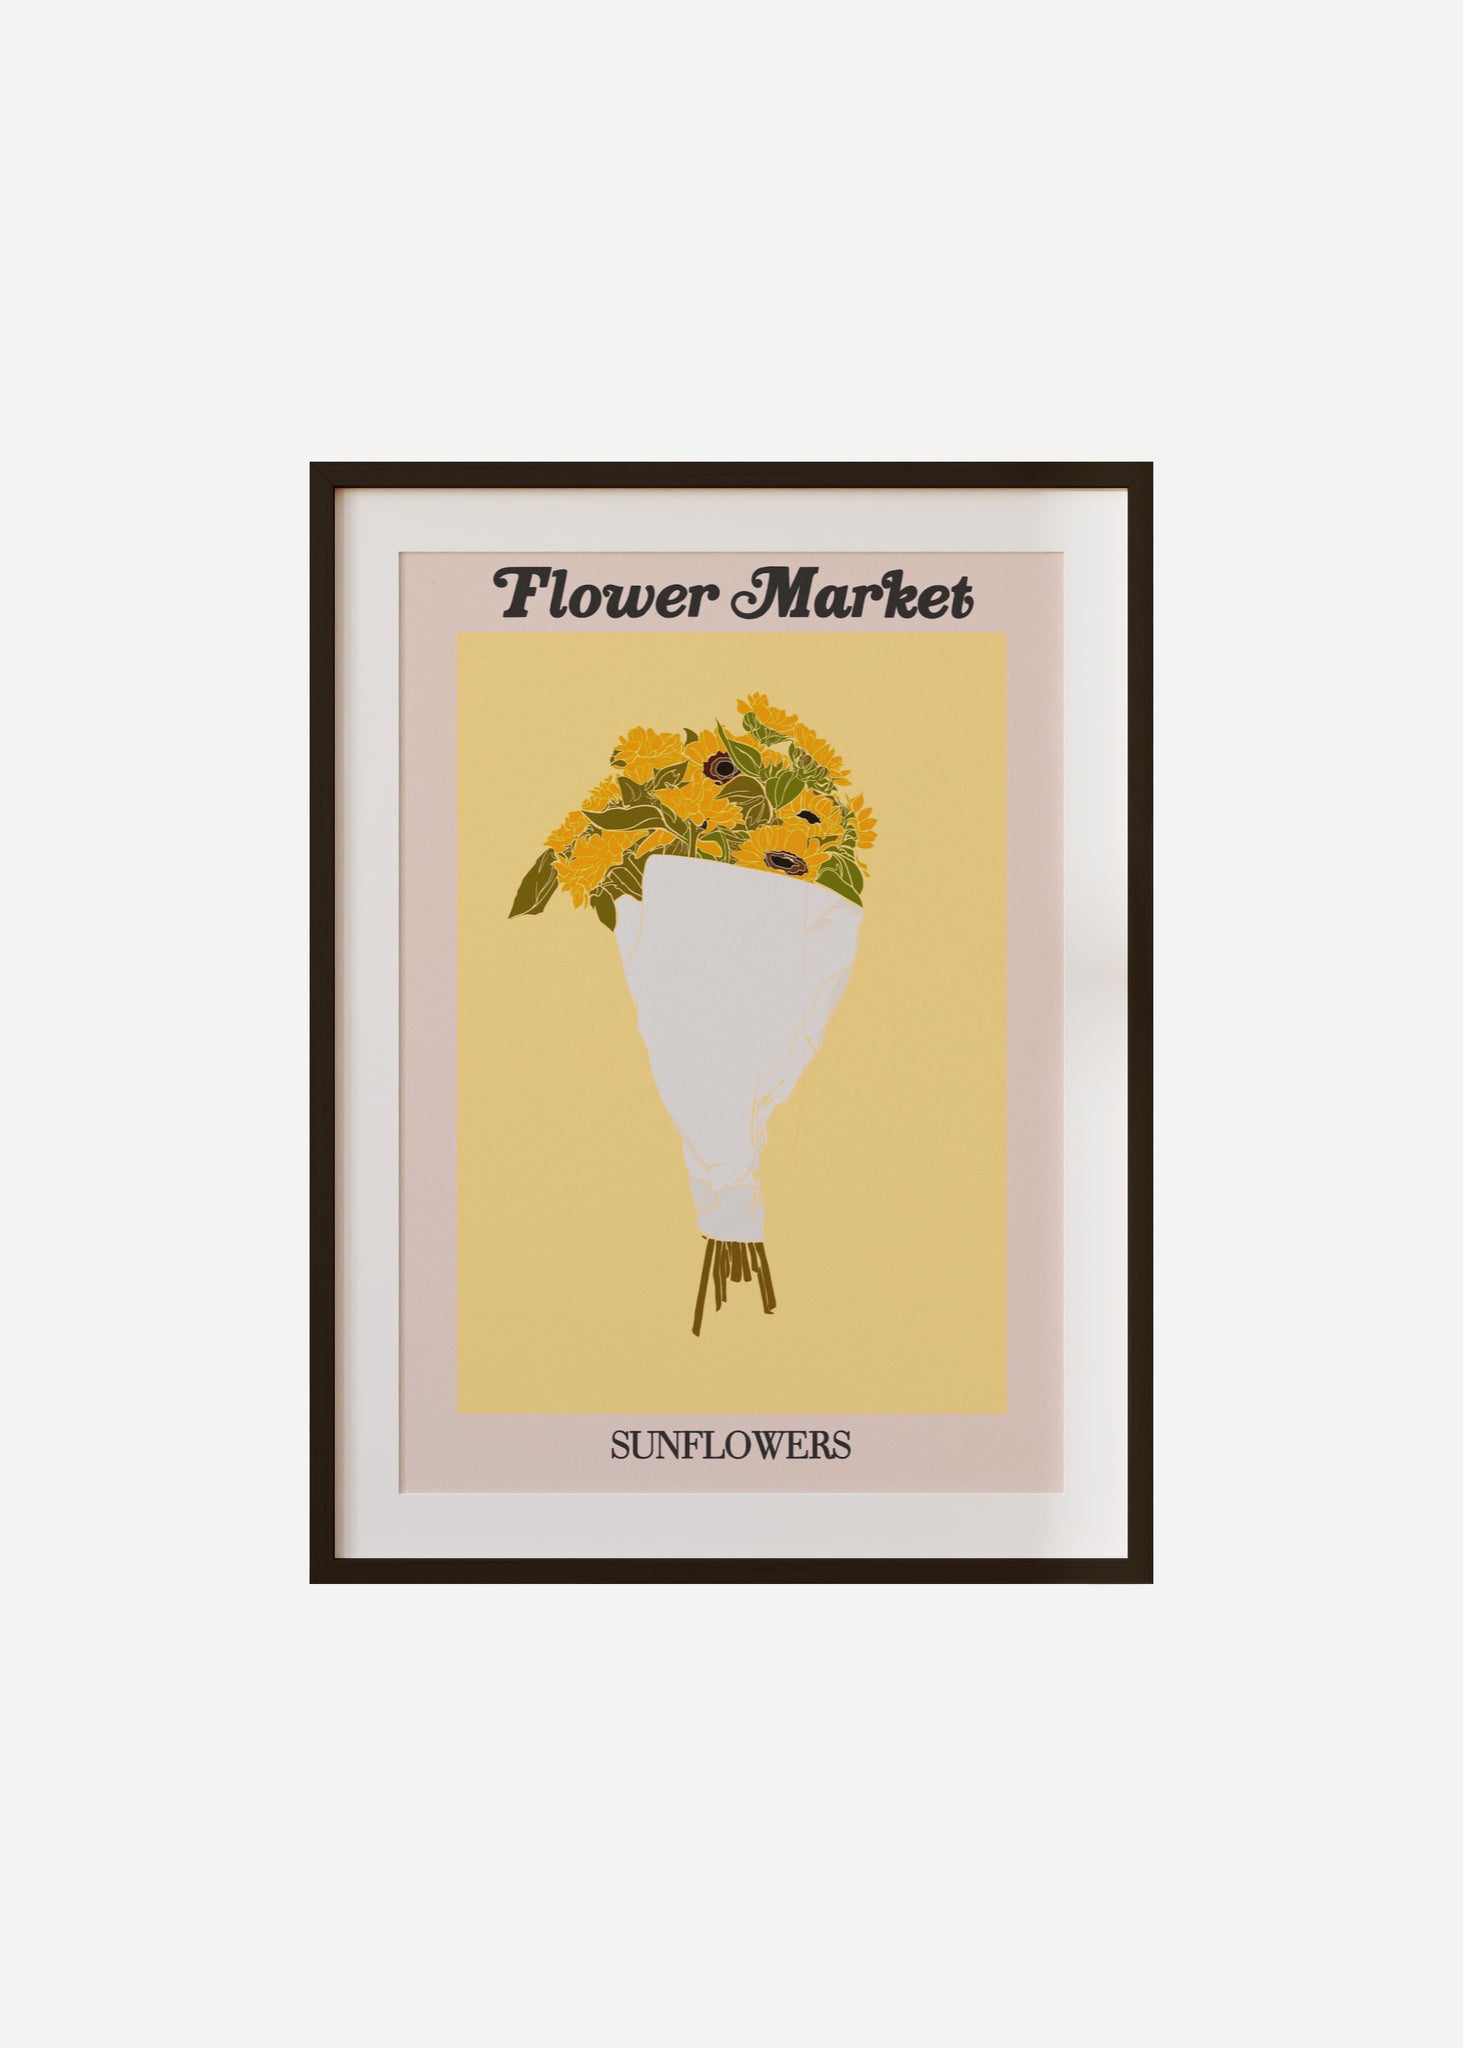 flower market / sunflowers Framed & Mounted Print